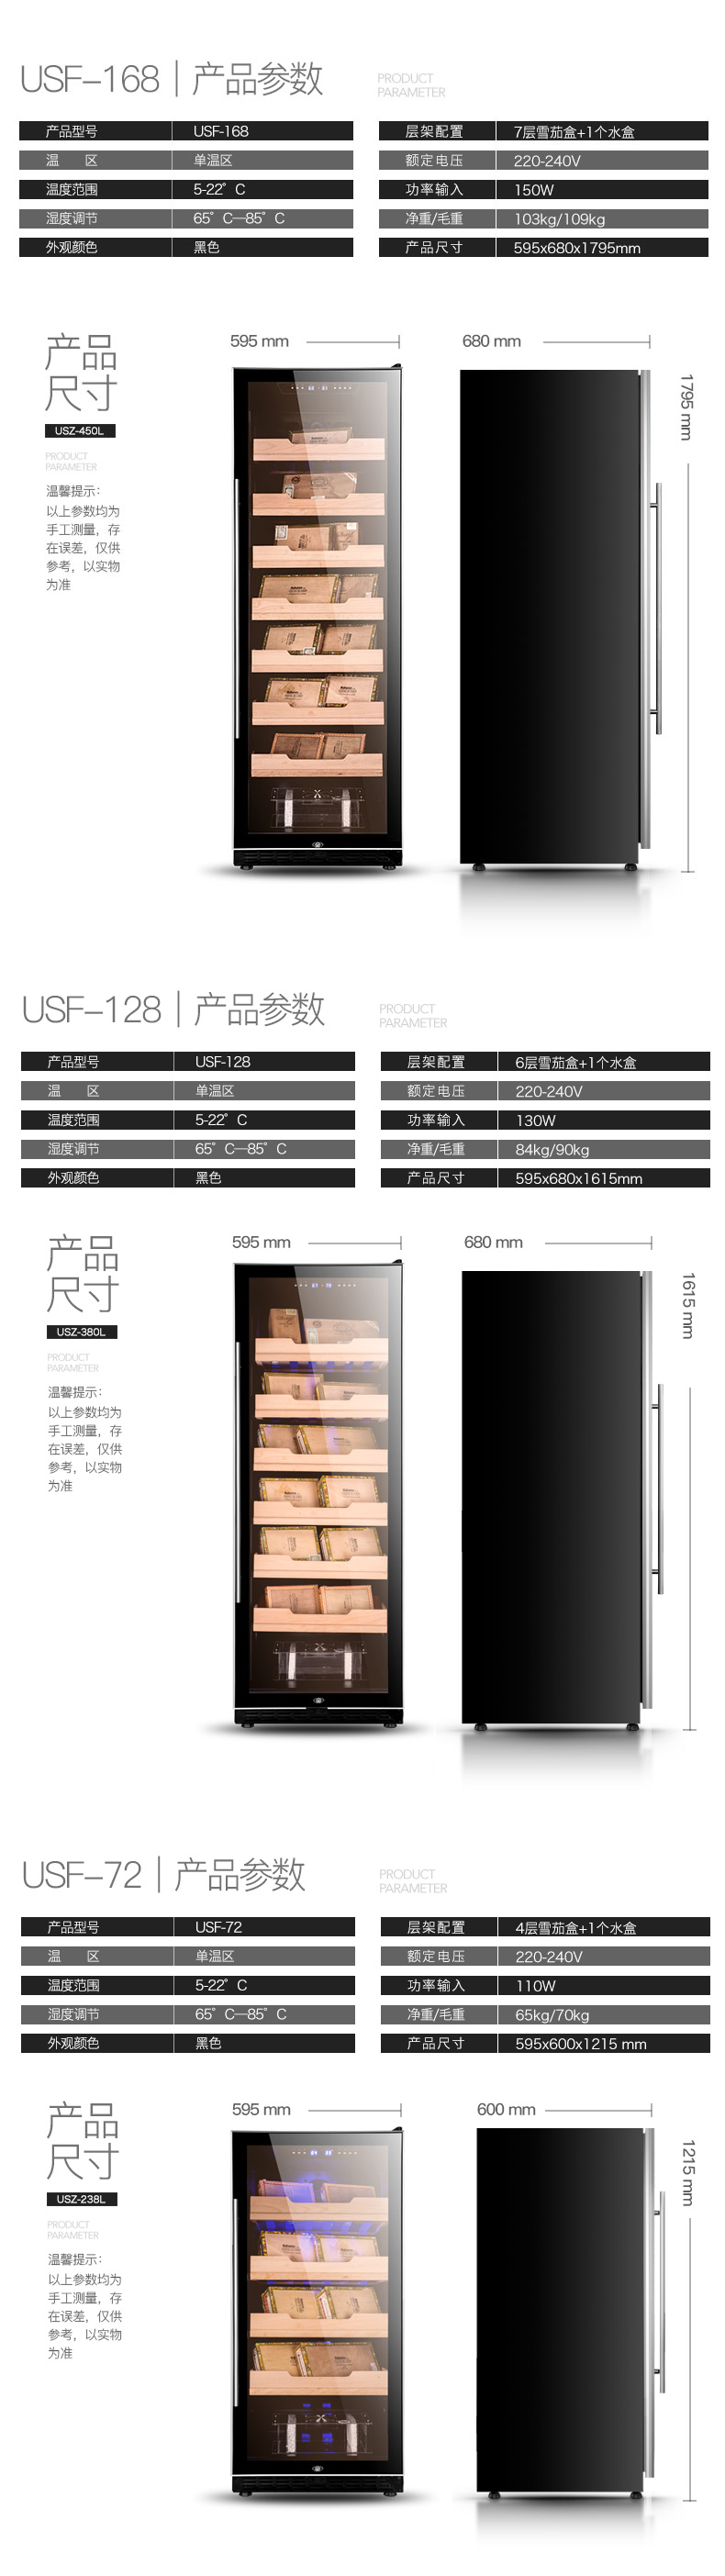 USF-168S雪茄柜参数配置.png